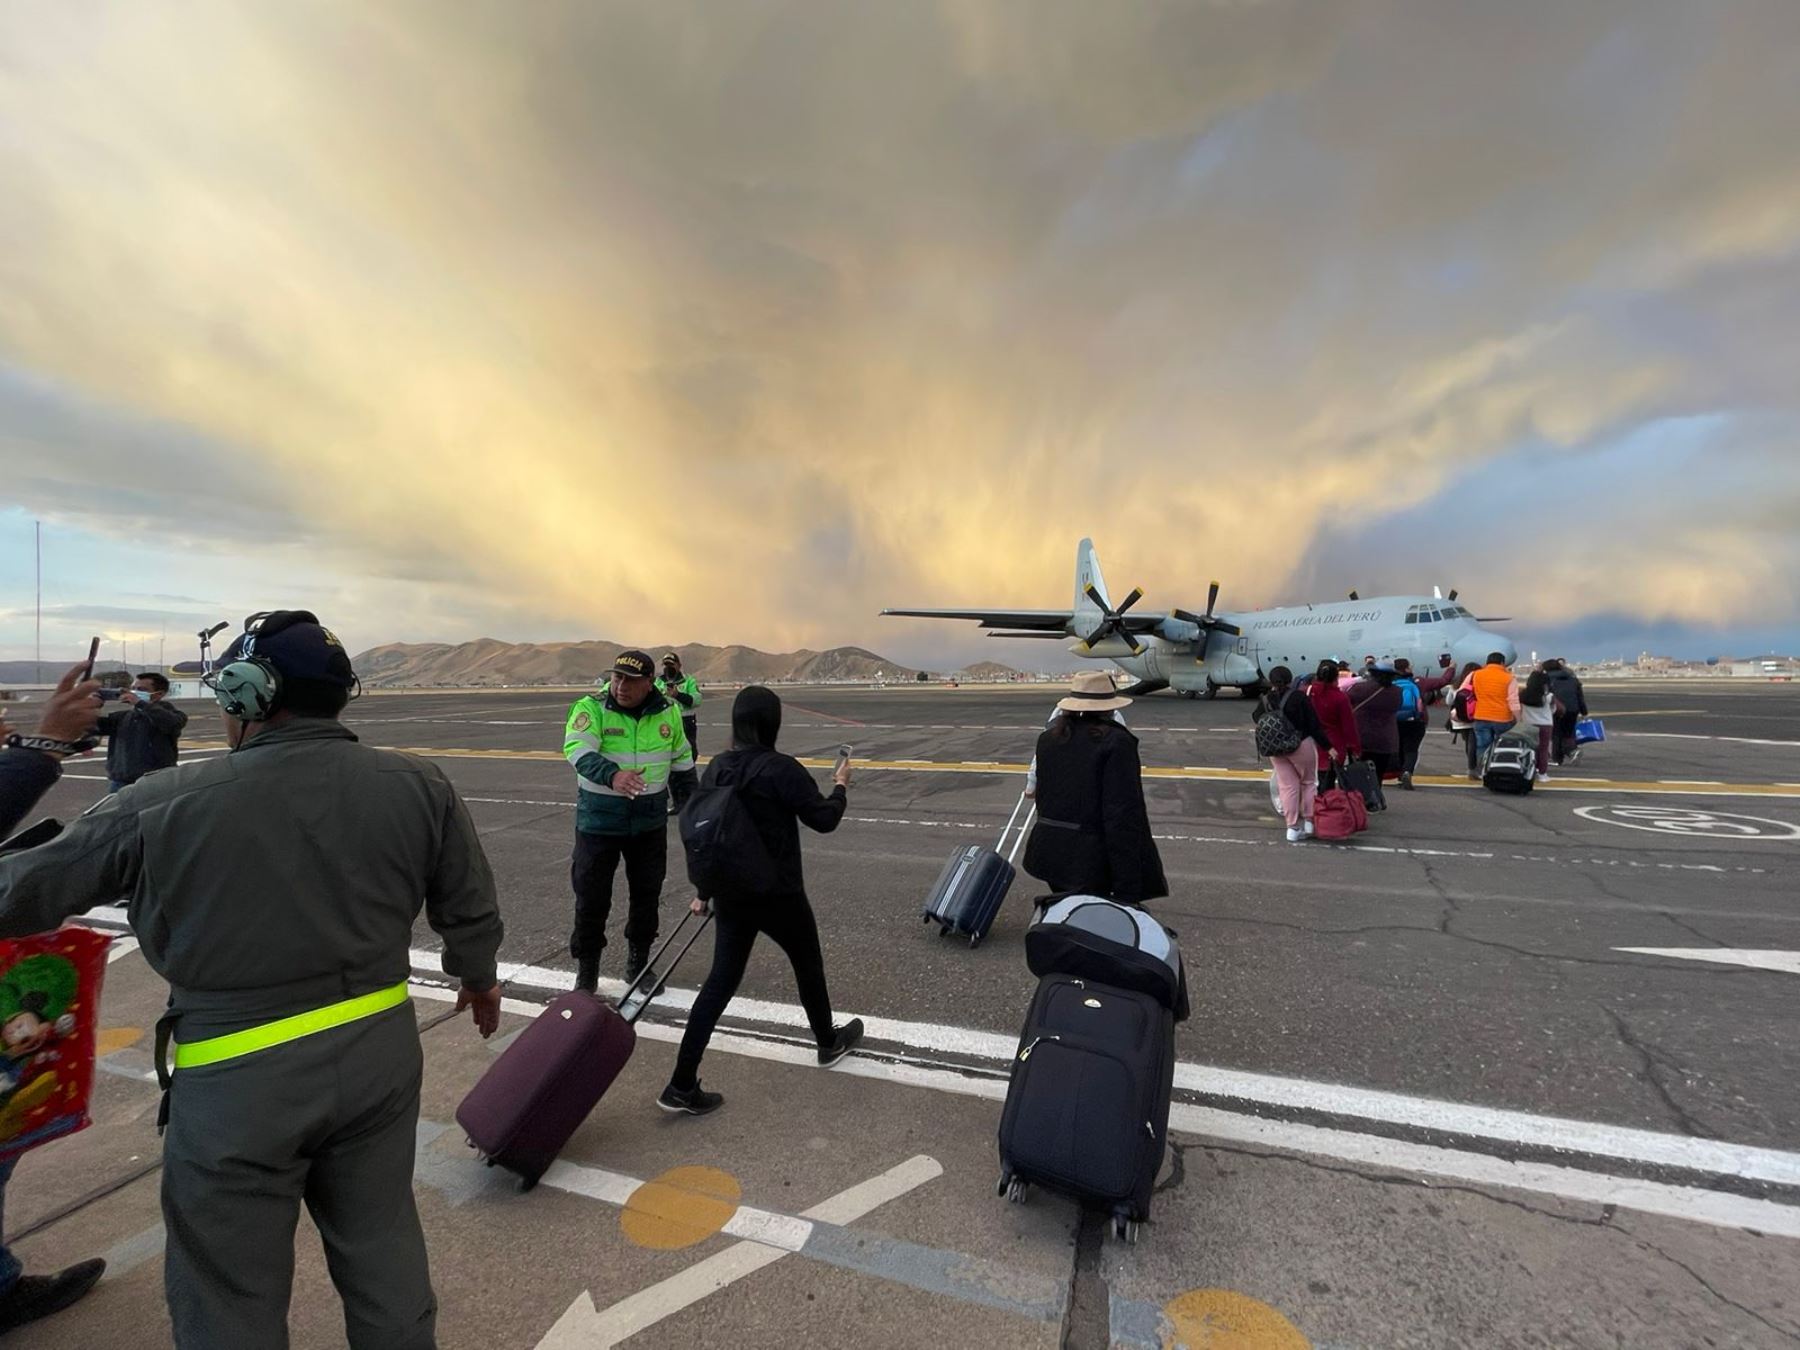 El Ministerio de Transportes y Comunicaciones (MTC) organizó un vuelo humanitario para el aeropuerto de Juliaca (Puno) que se encuentra temporalmente cerrado. Foto: ANDINA/MTC